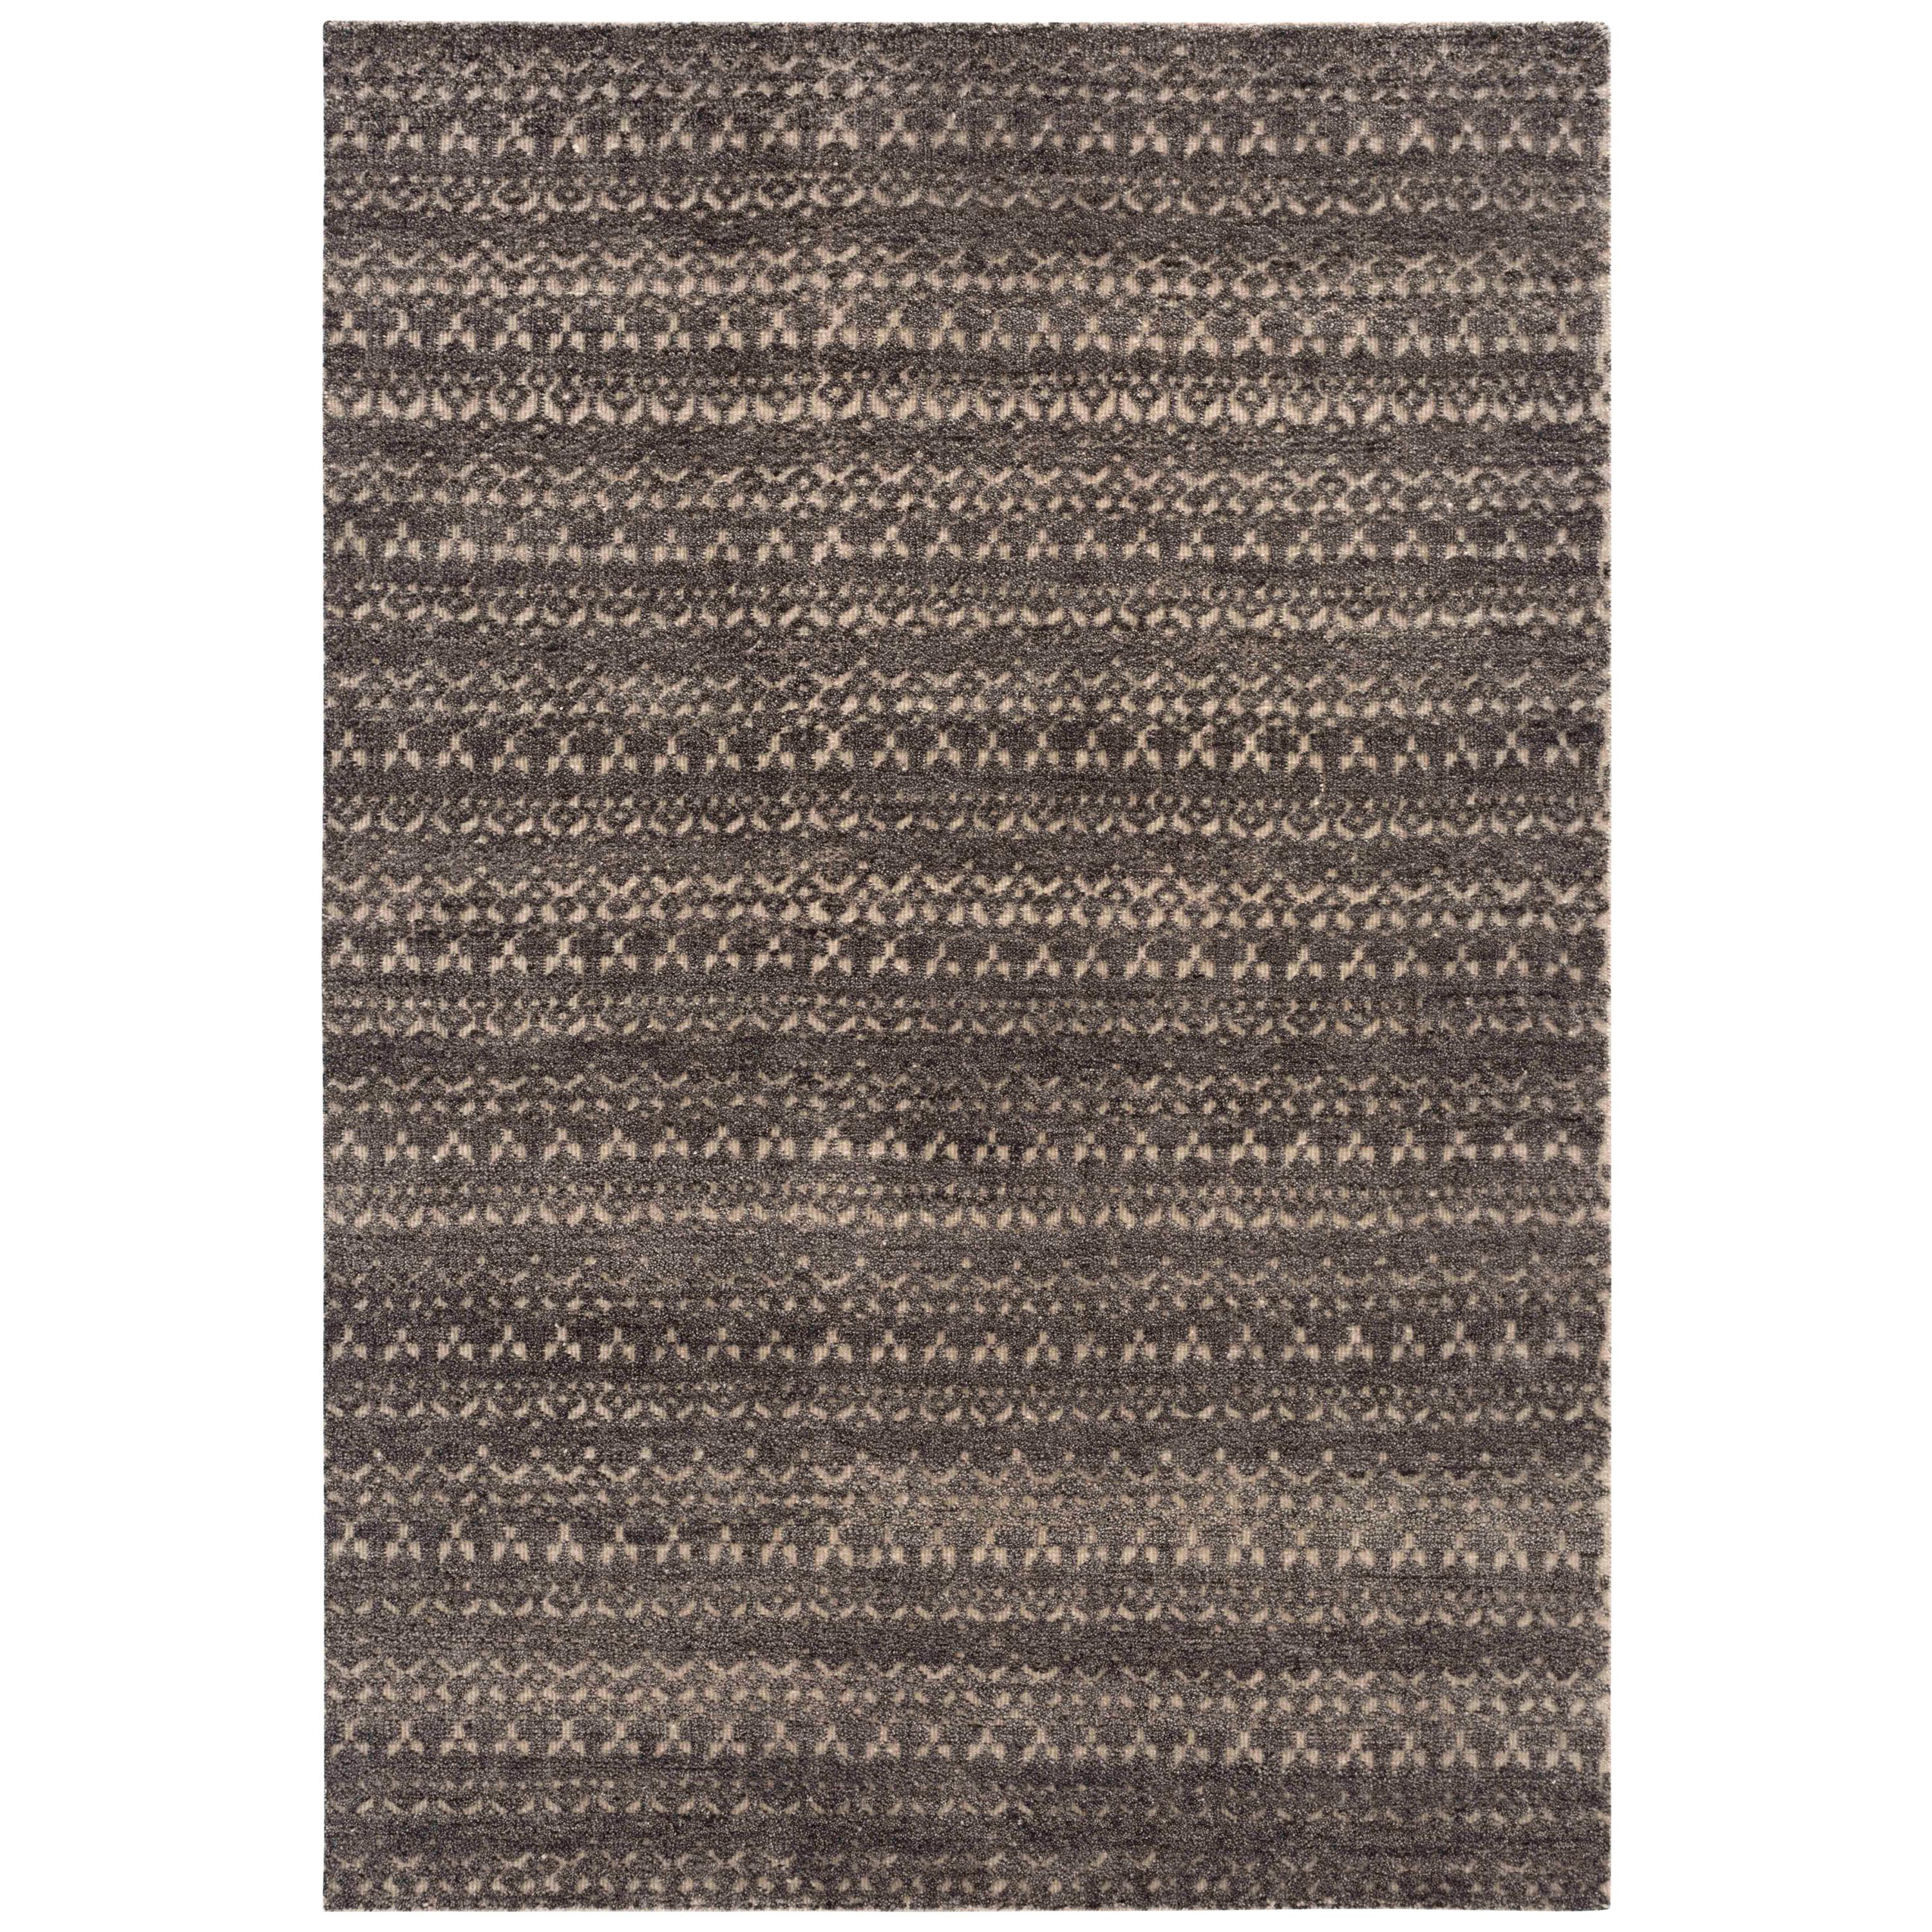 GAN Cirus Teppich aus handgeknüpfter grauer und brauner Wolle